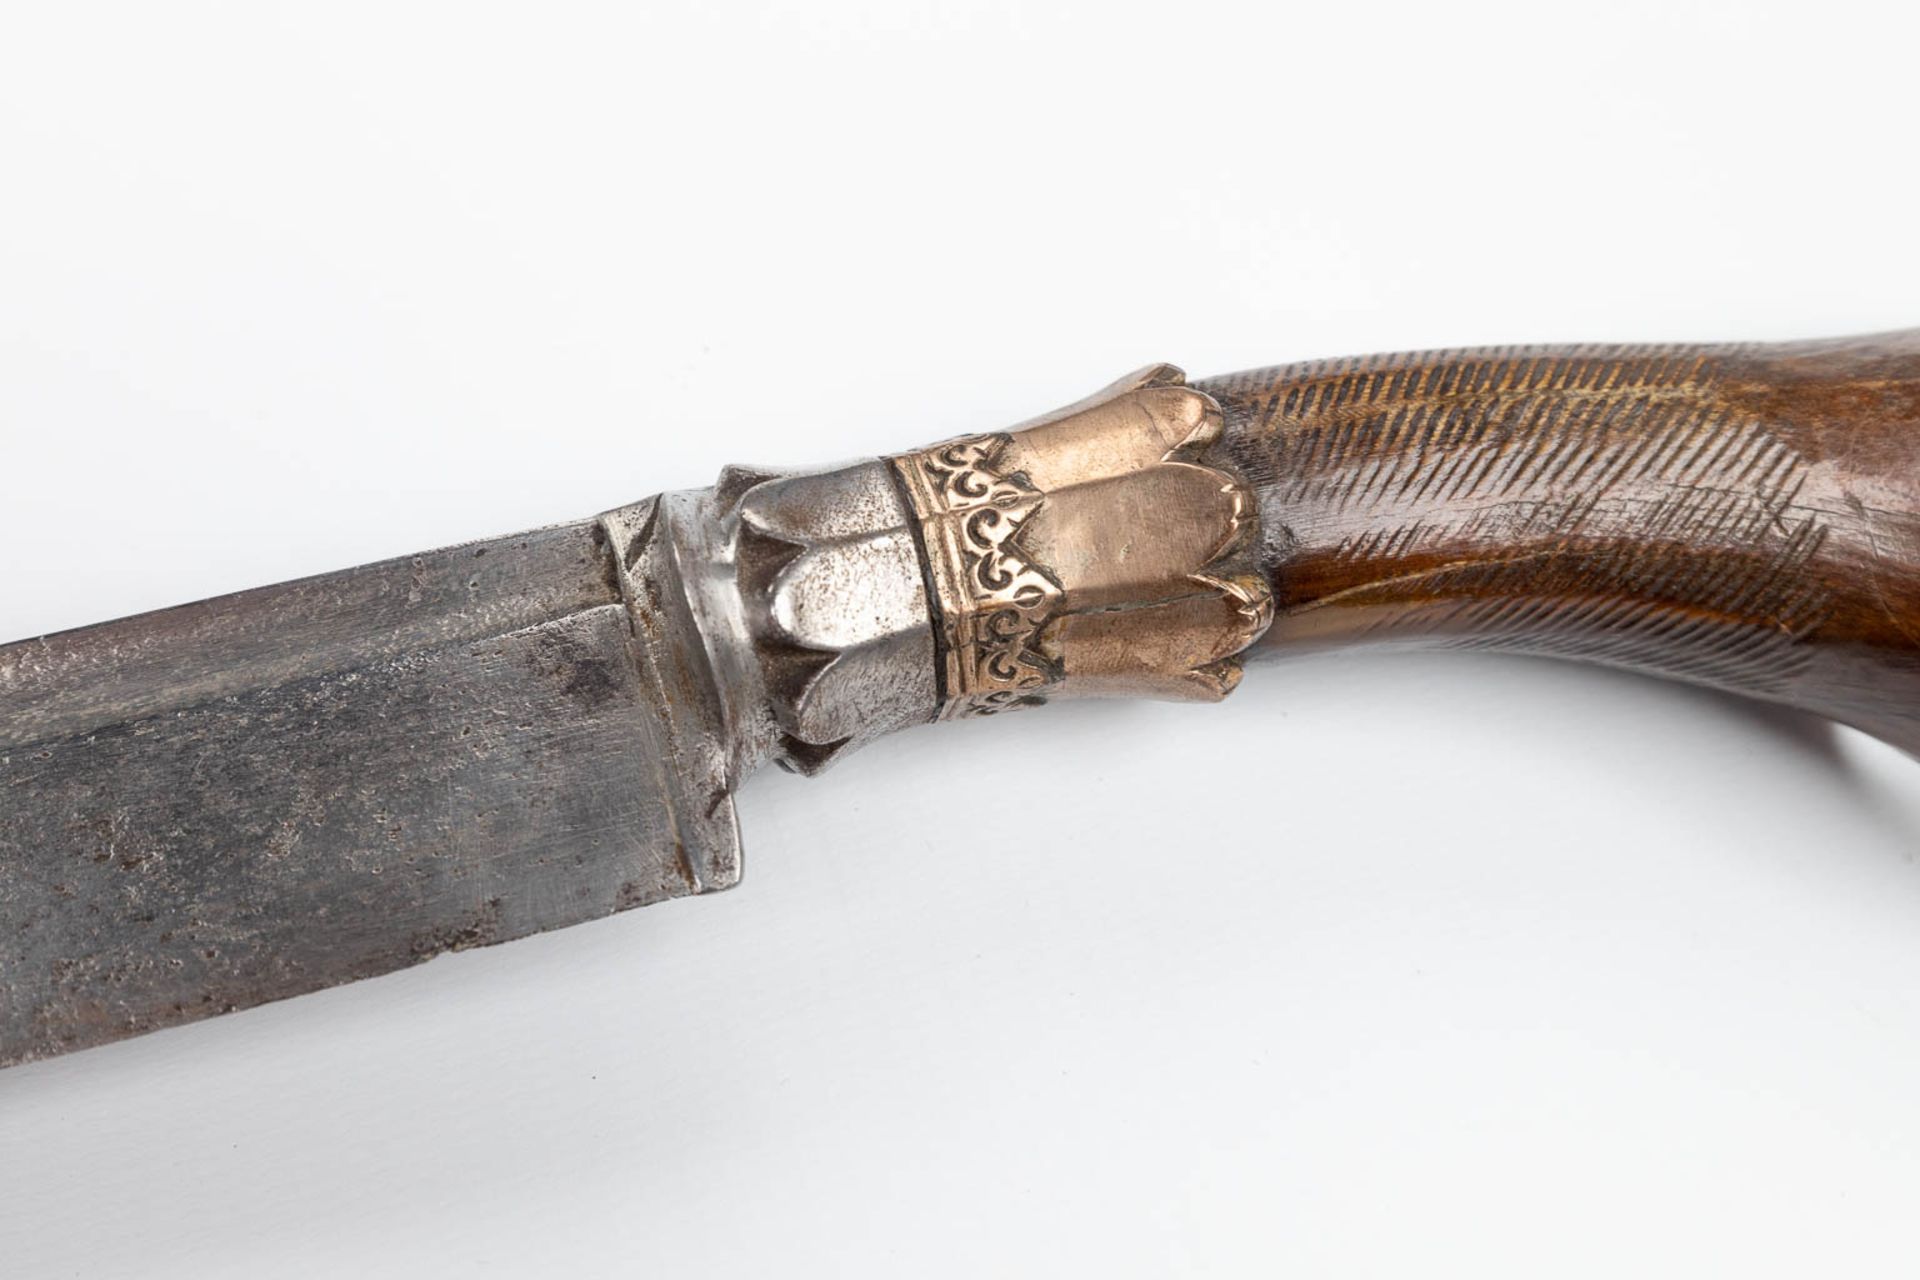 A collection of 4 'Kris' swords, Java, 18de/19de eeuw. (W: 74 cm) - Image 9 of 17